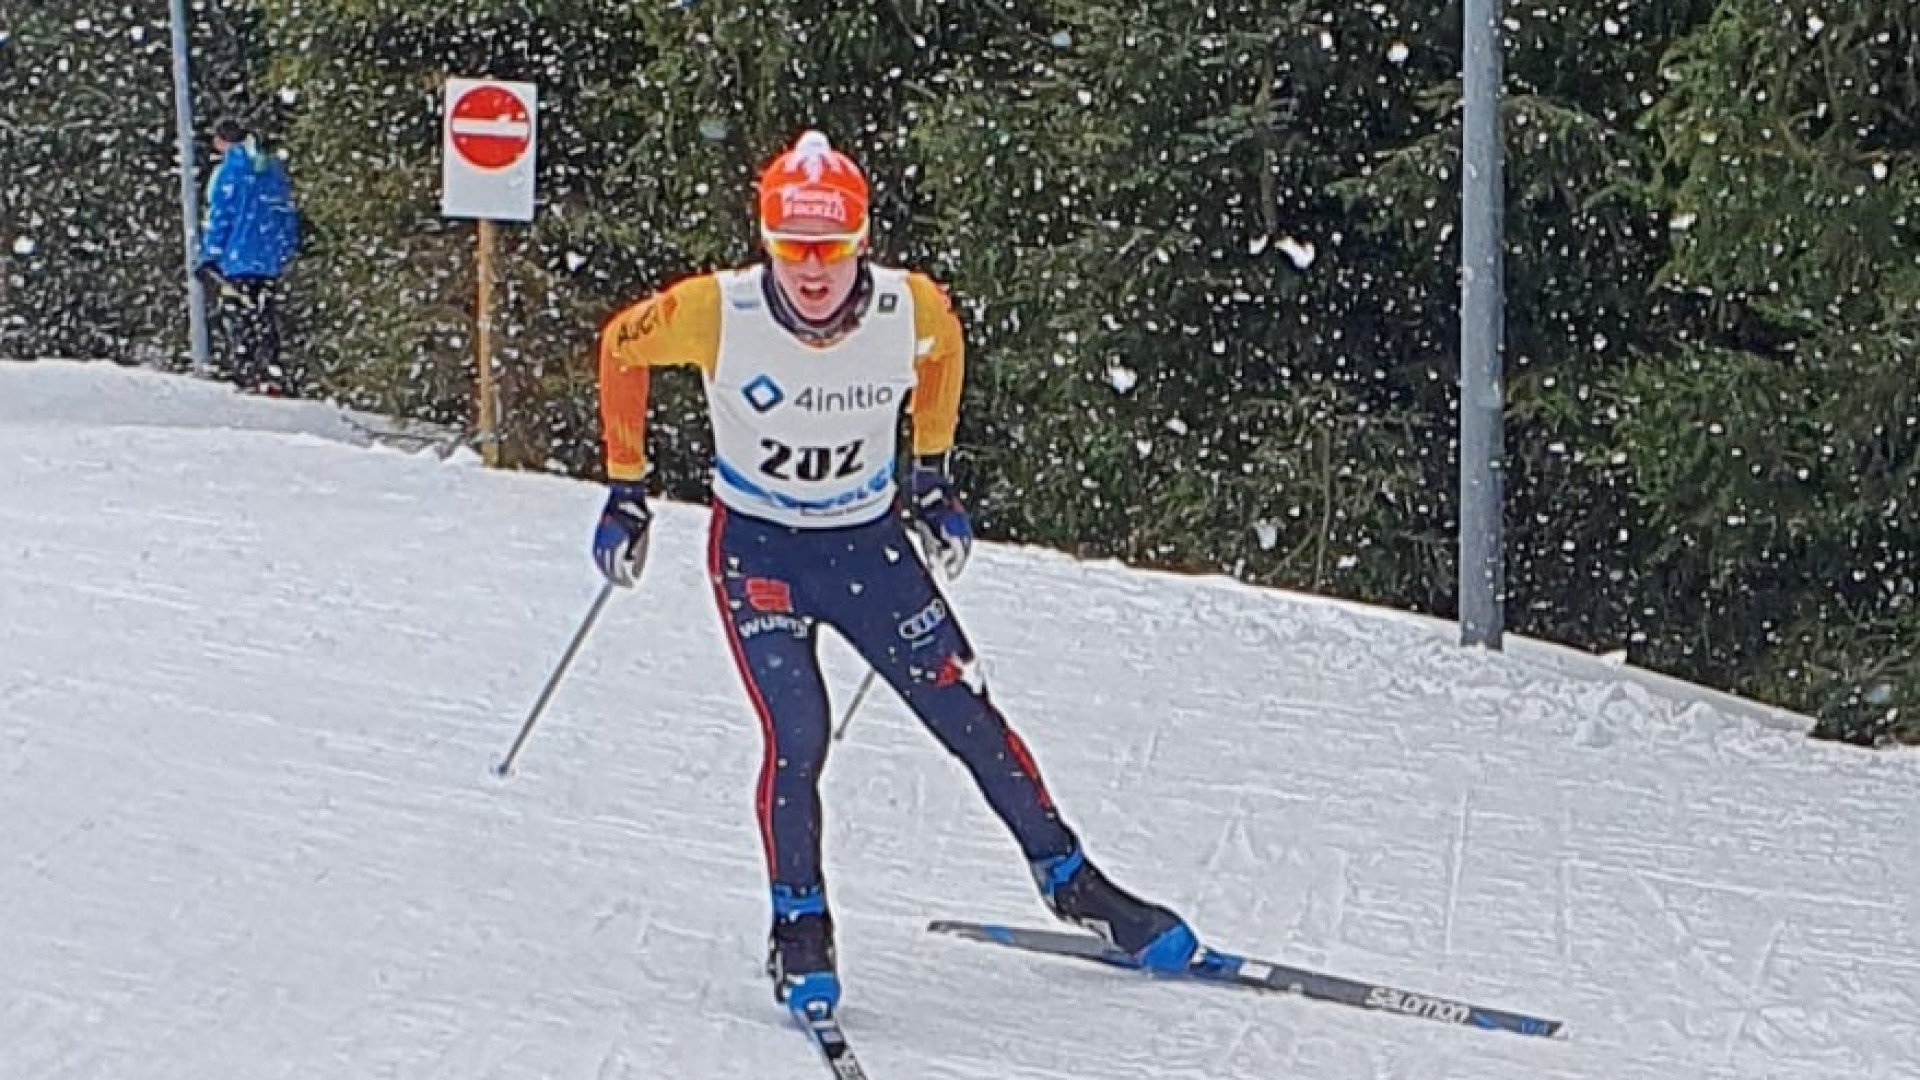 Für Jonas Müller (U18), ebenfalls Landeskader 1 des Deutschen Skiverbandes, war es der letzte Wettbewerb, bevor er vom 11. bis 13. März zu seinem ersten internationalen Wettkampf nach Sappada, Italien, fährt.